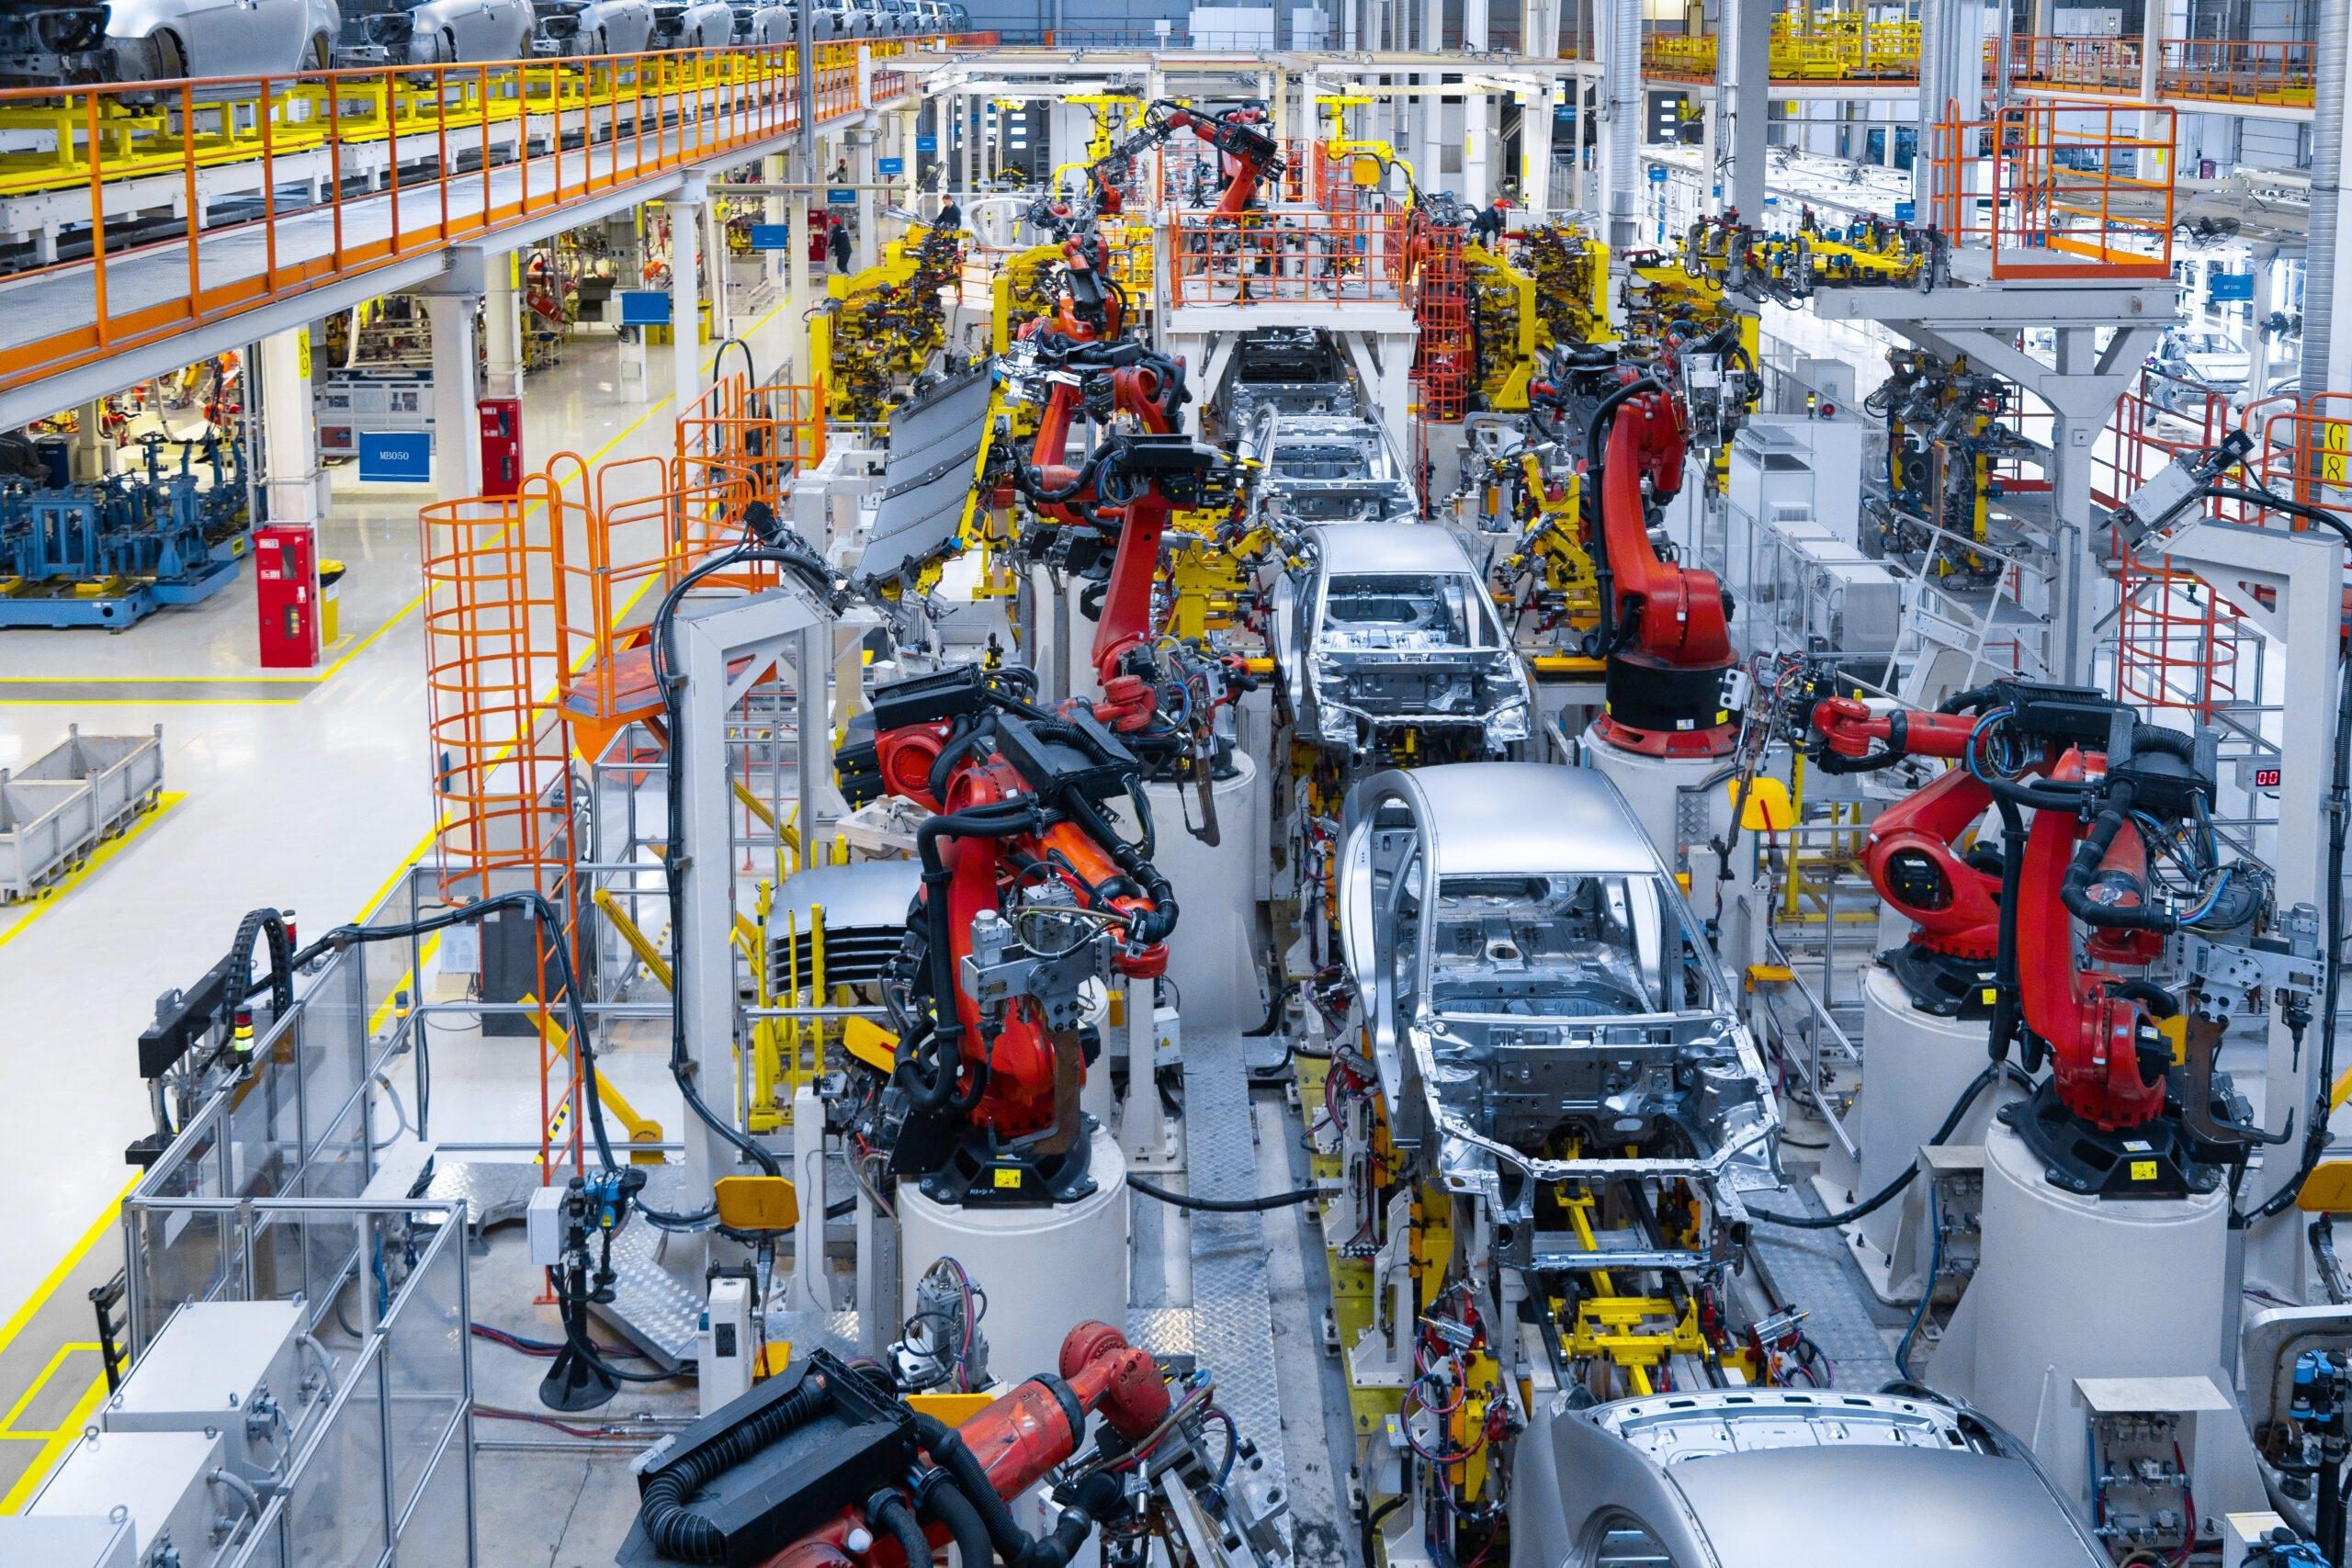 Chery cierra el acuerdo para producir 150.000 automóviles en la antigua fábrica de Nissan en España